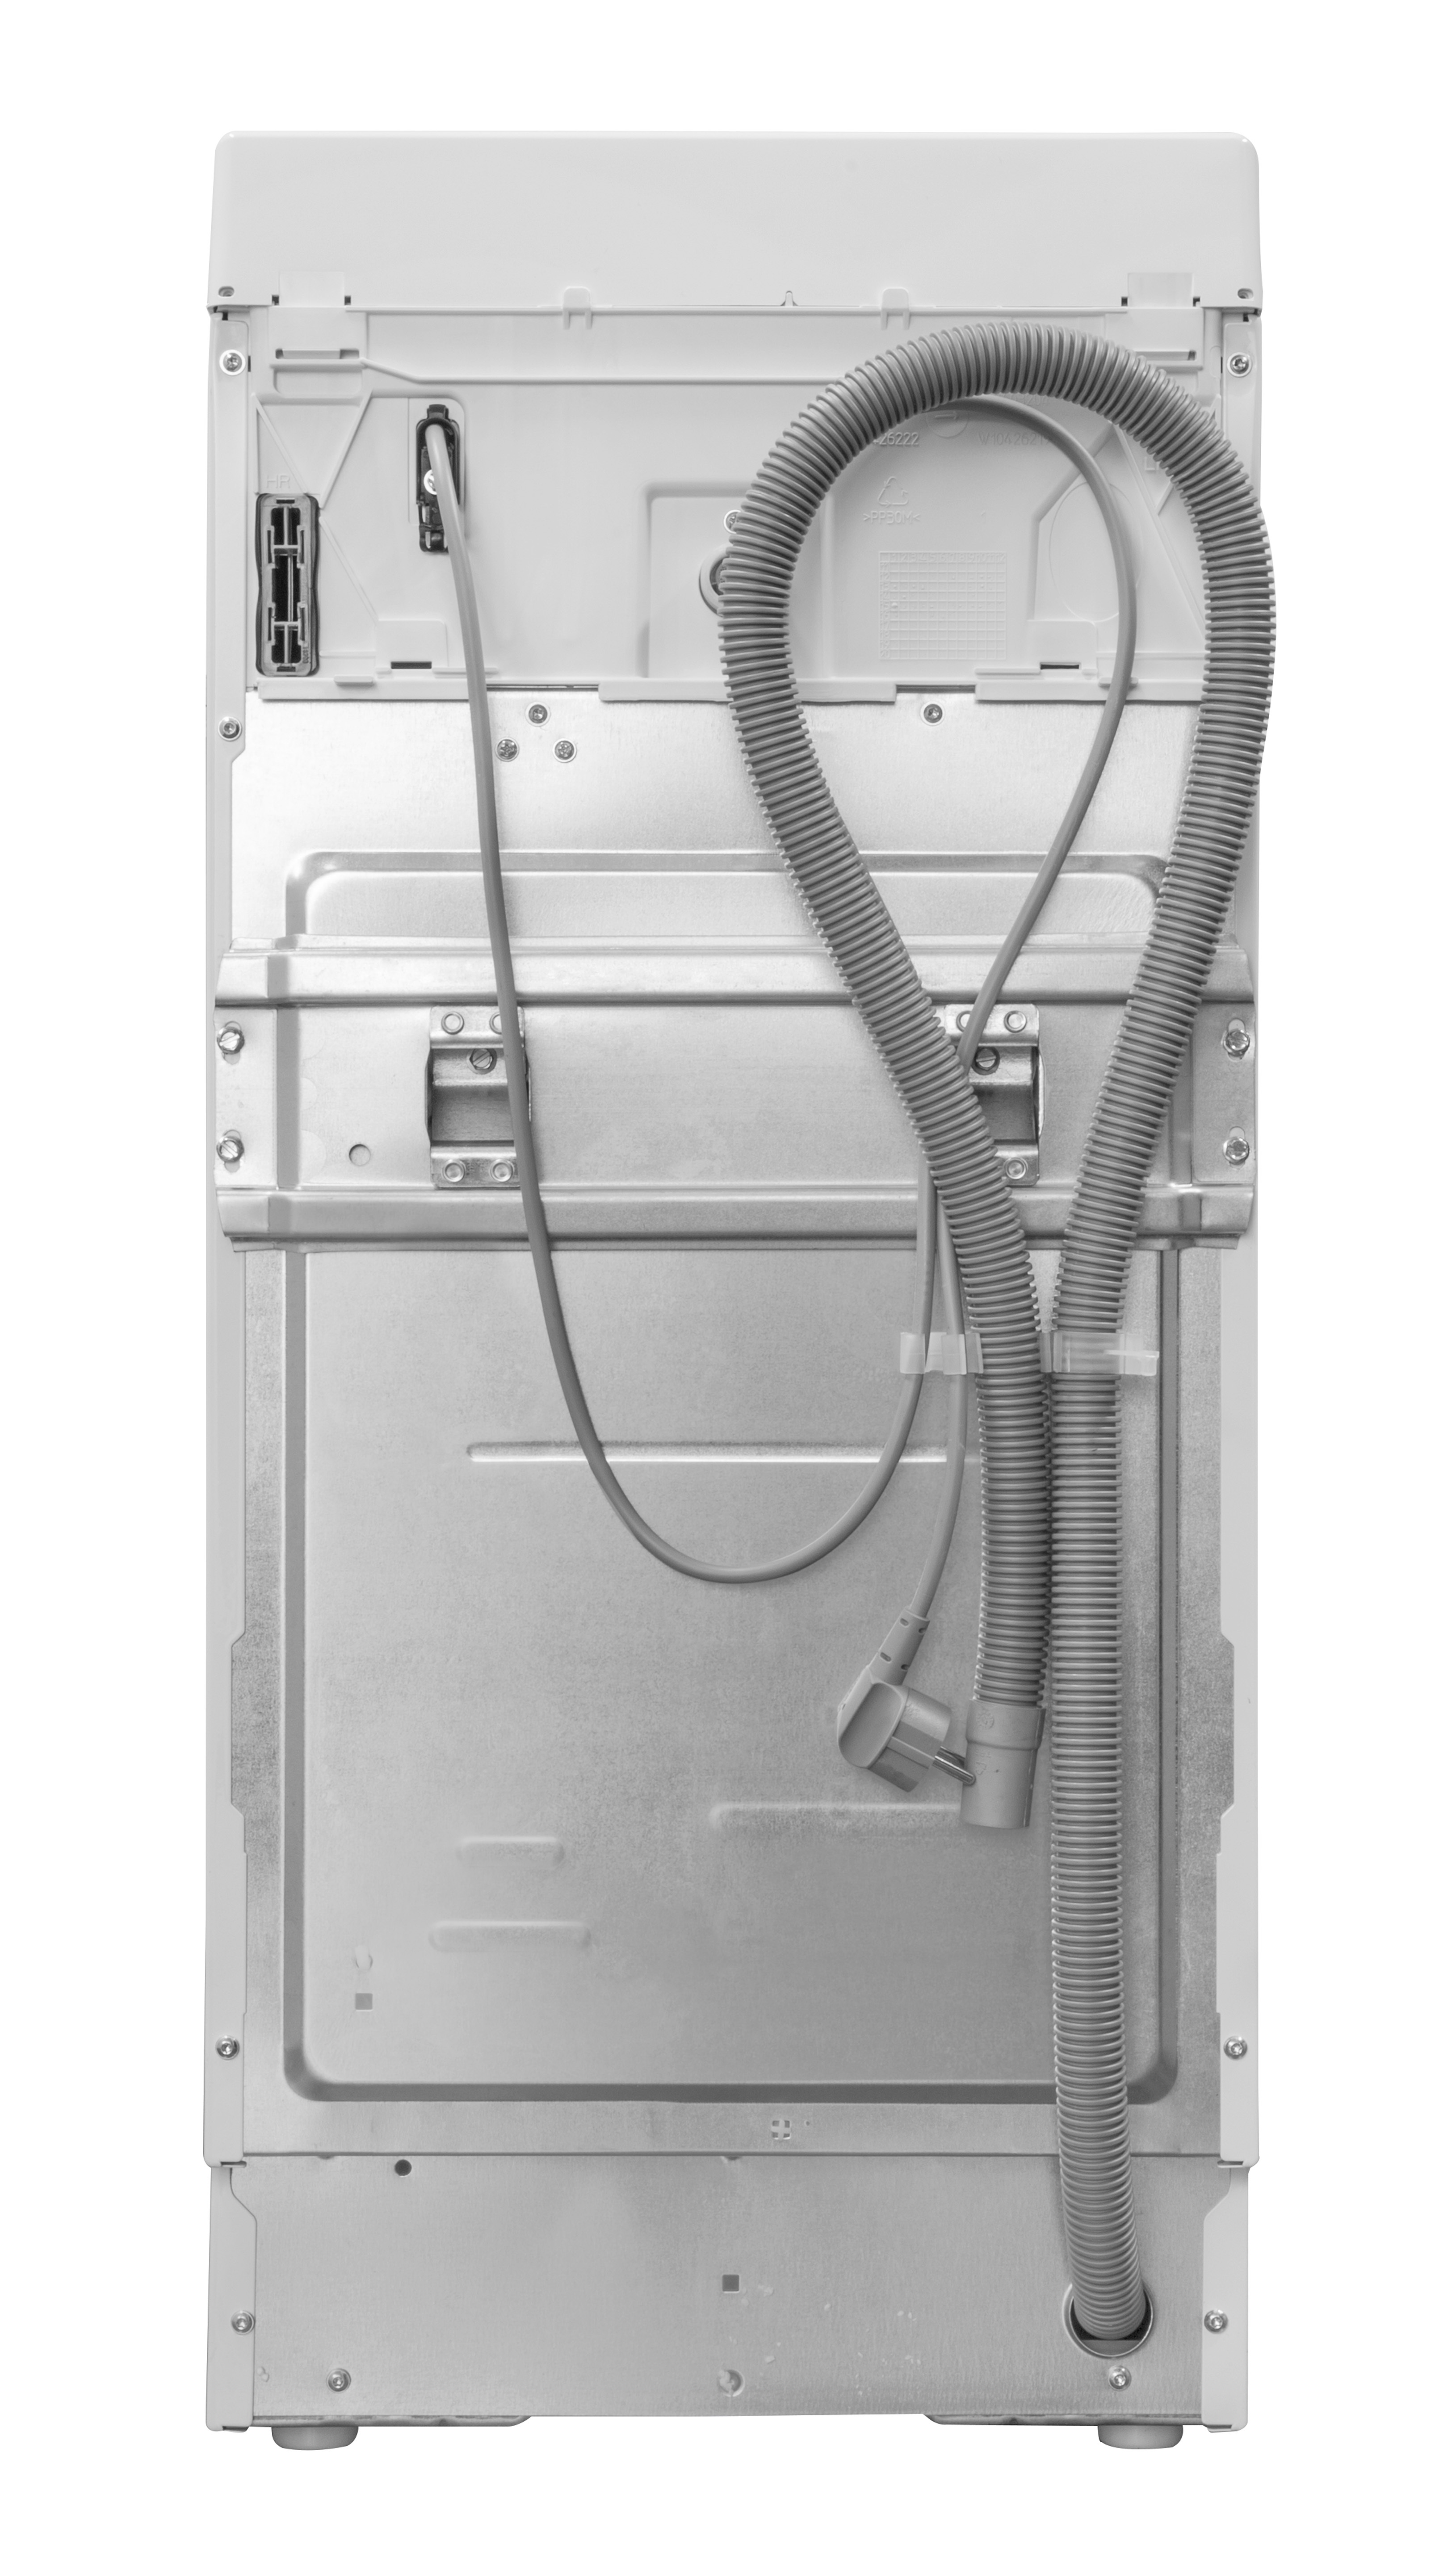 BAUKNECHT WMT ECOSTAR 6Z 1151 U/Min., BW kg, Waschmaschine C) (6 N